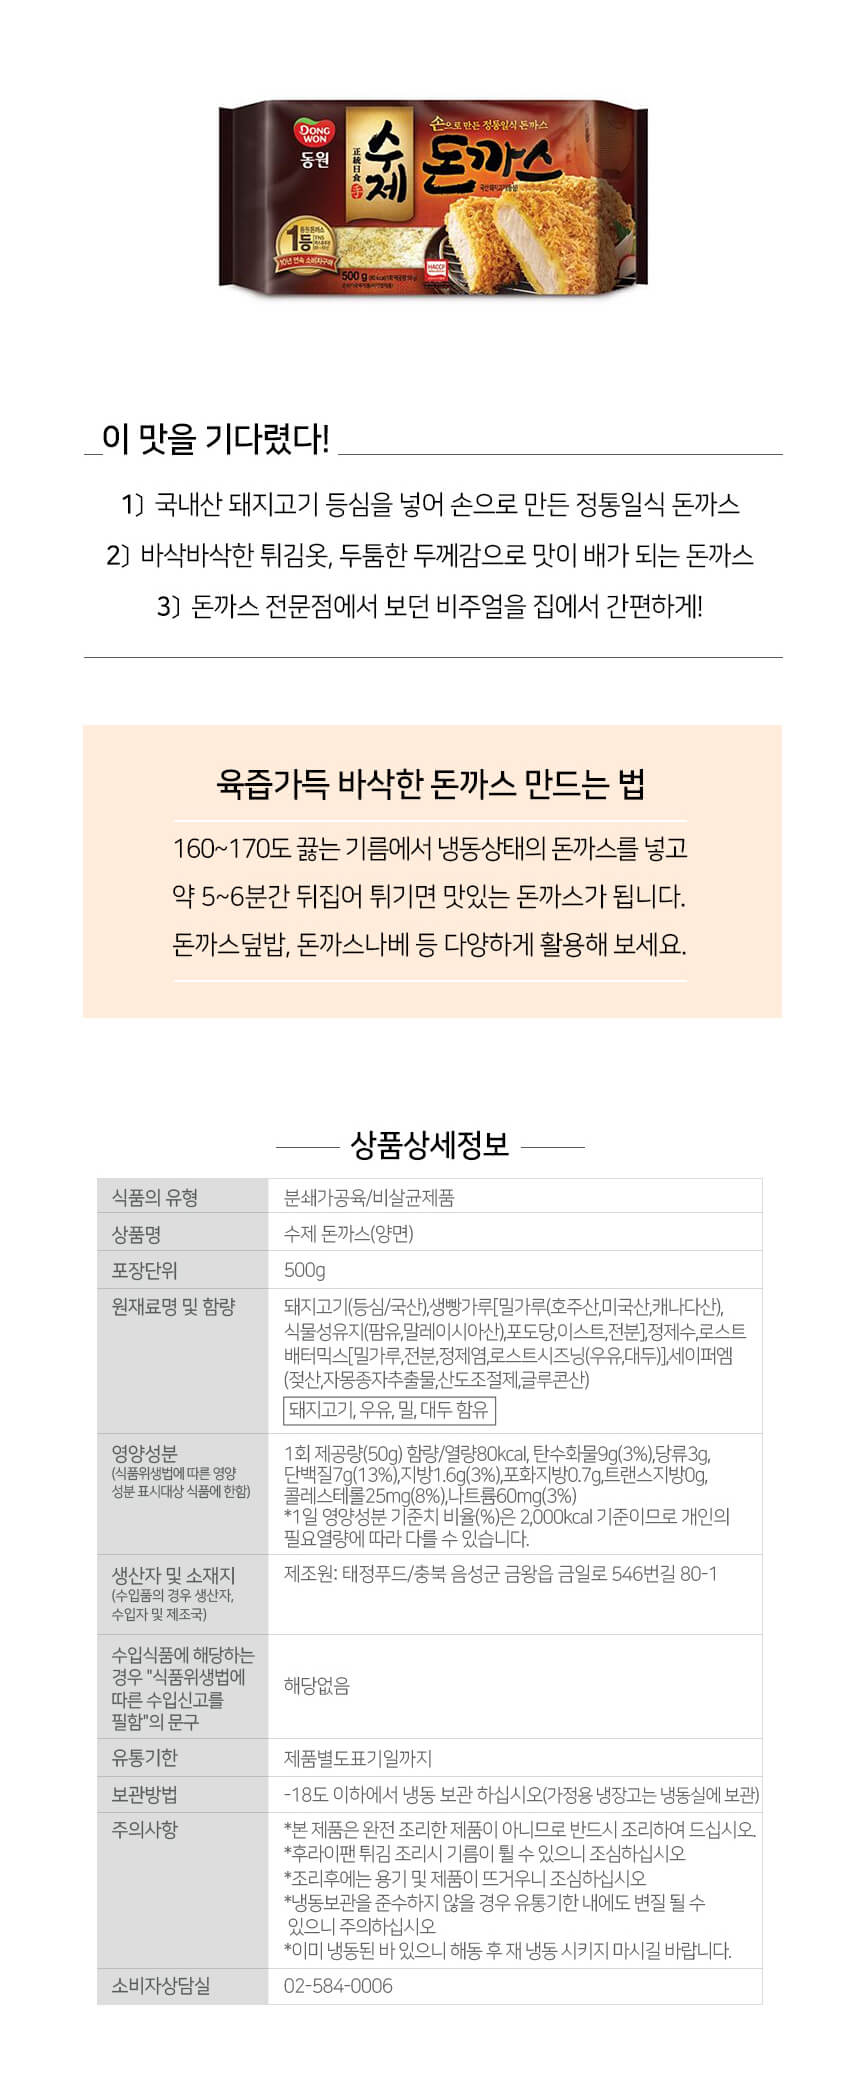 韓國食品-[동원] 수제돈까스 500g